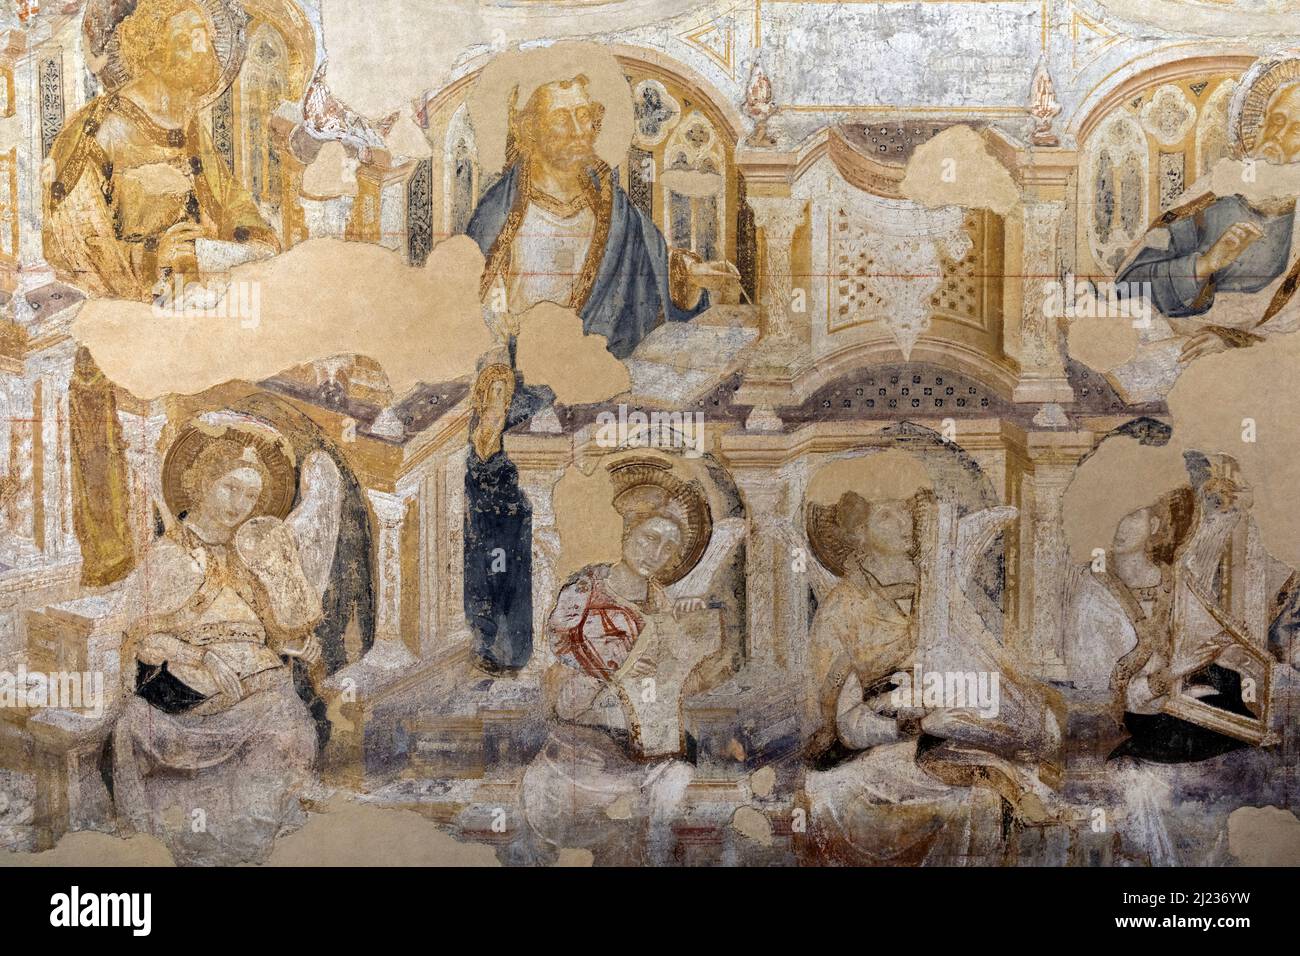 Italy, Venice, Doge's Palace, Coronation of the Virgin, known as Paradiso, 1365-1366, fresco art Stock Photo